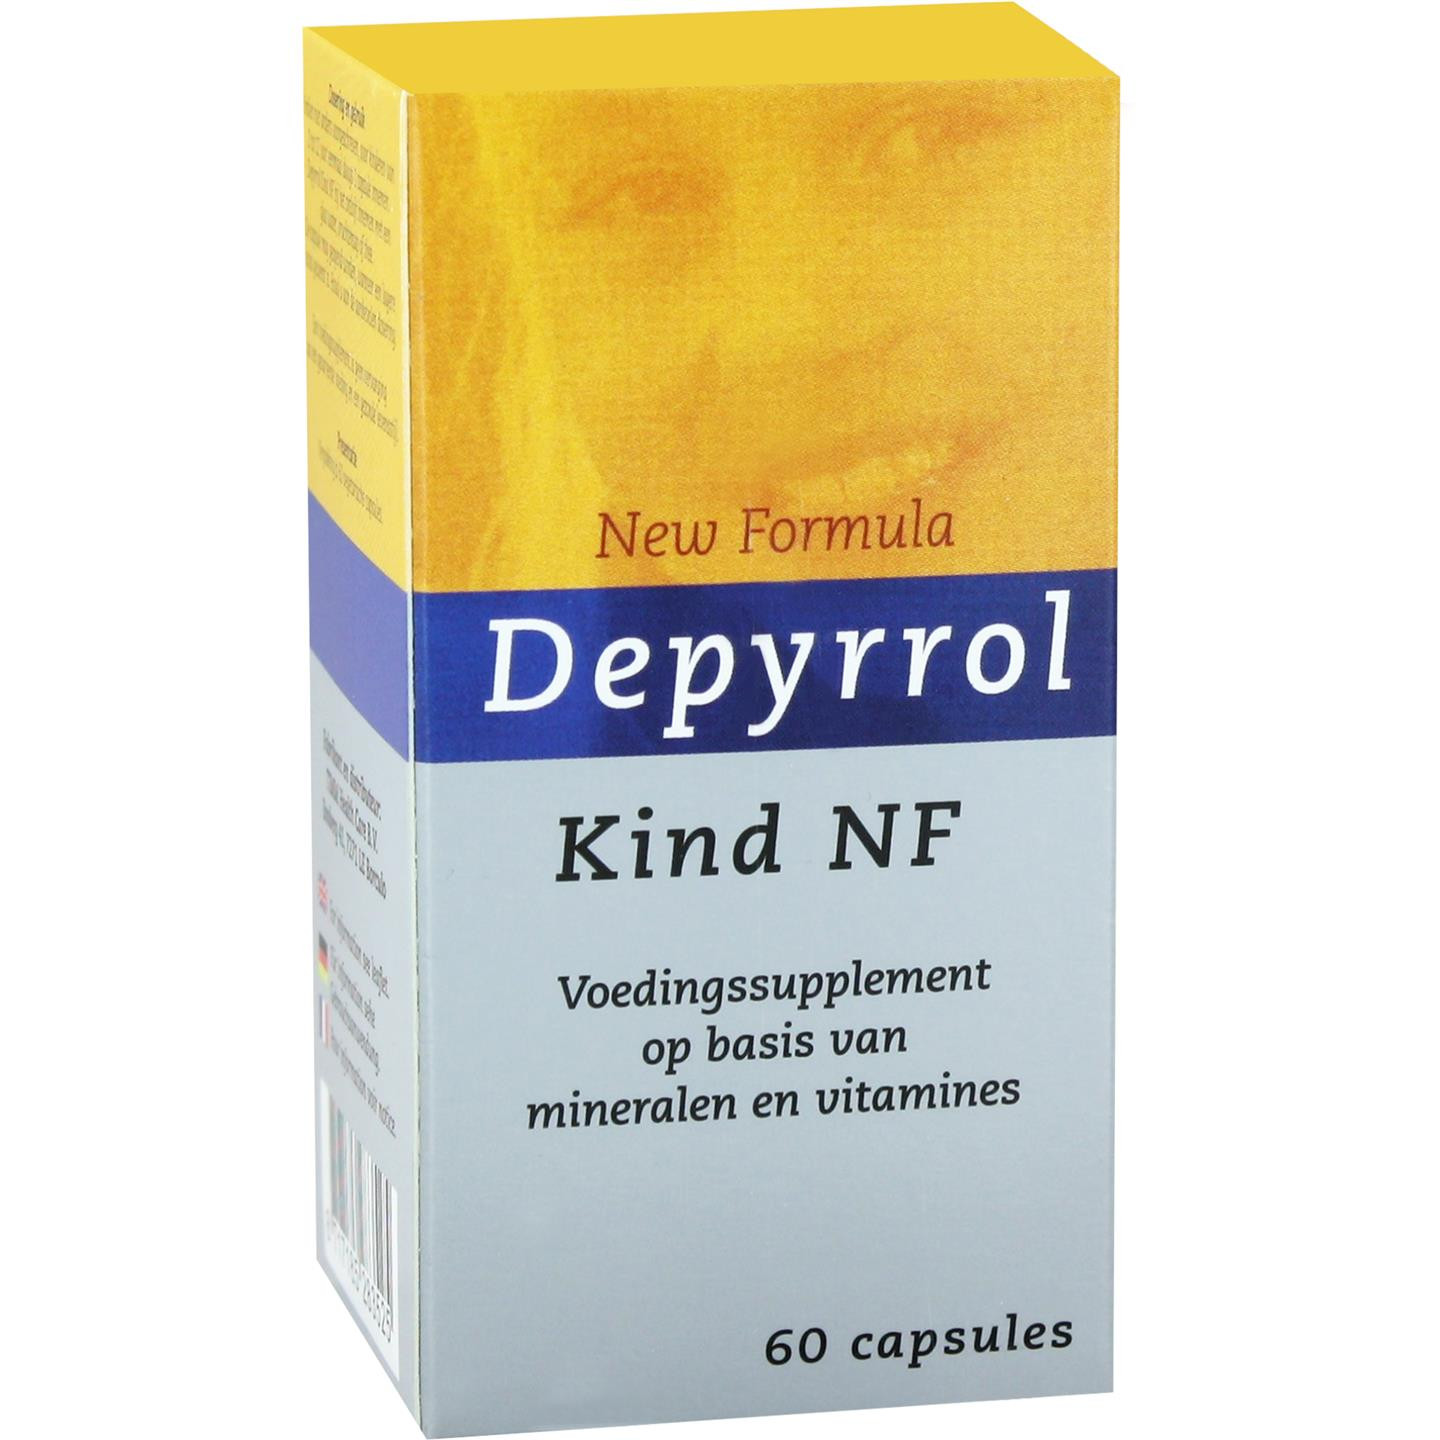 Depyrrol Kind NF